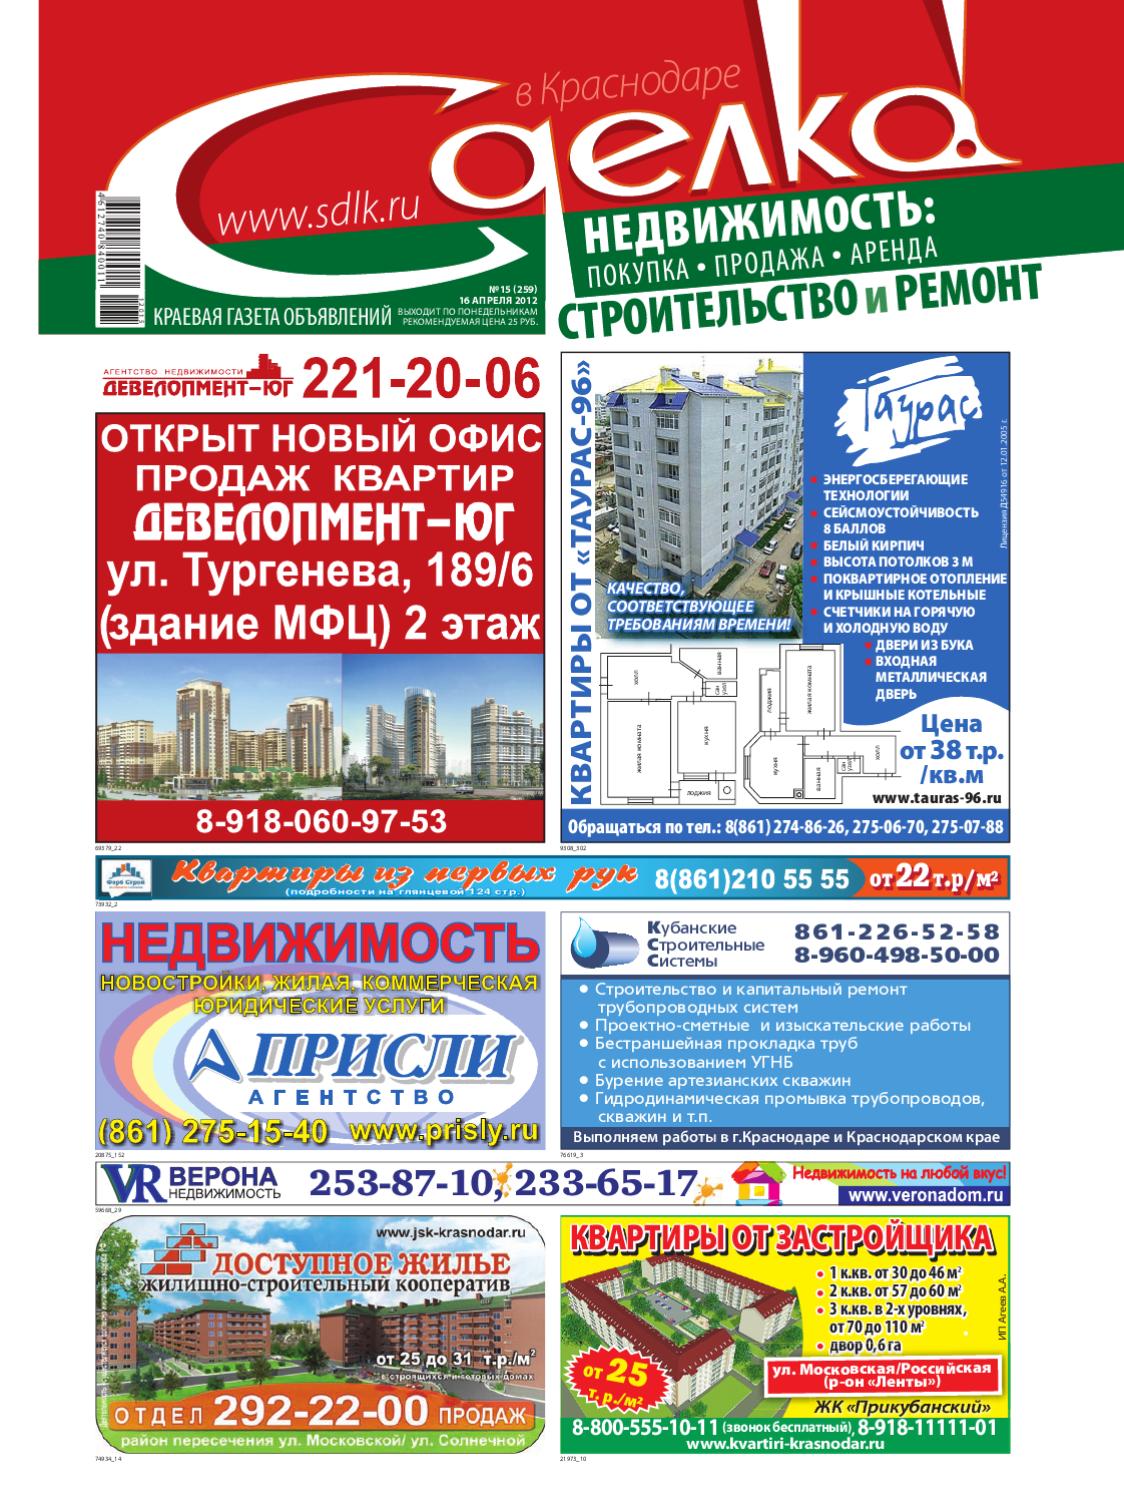 Сделка в Краснодаре №15, апрель 2012